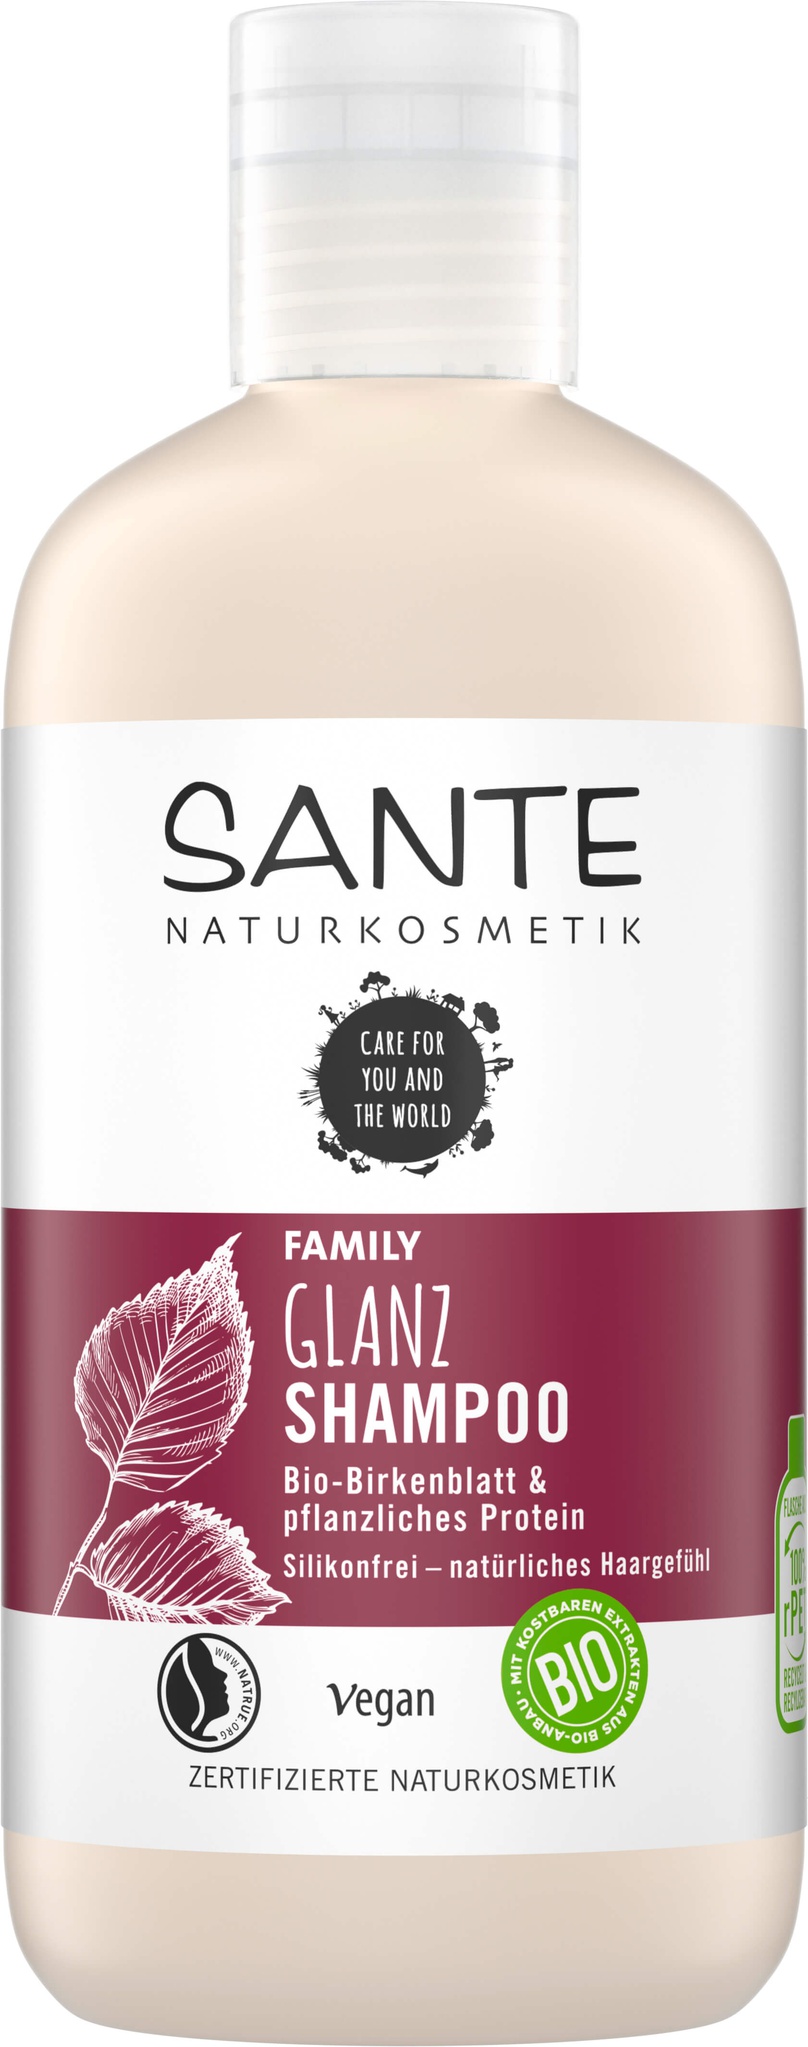 Sante Naturkosmetik Glanz Shampoo Bio-Birkenblatt & Pflanzliches Protein